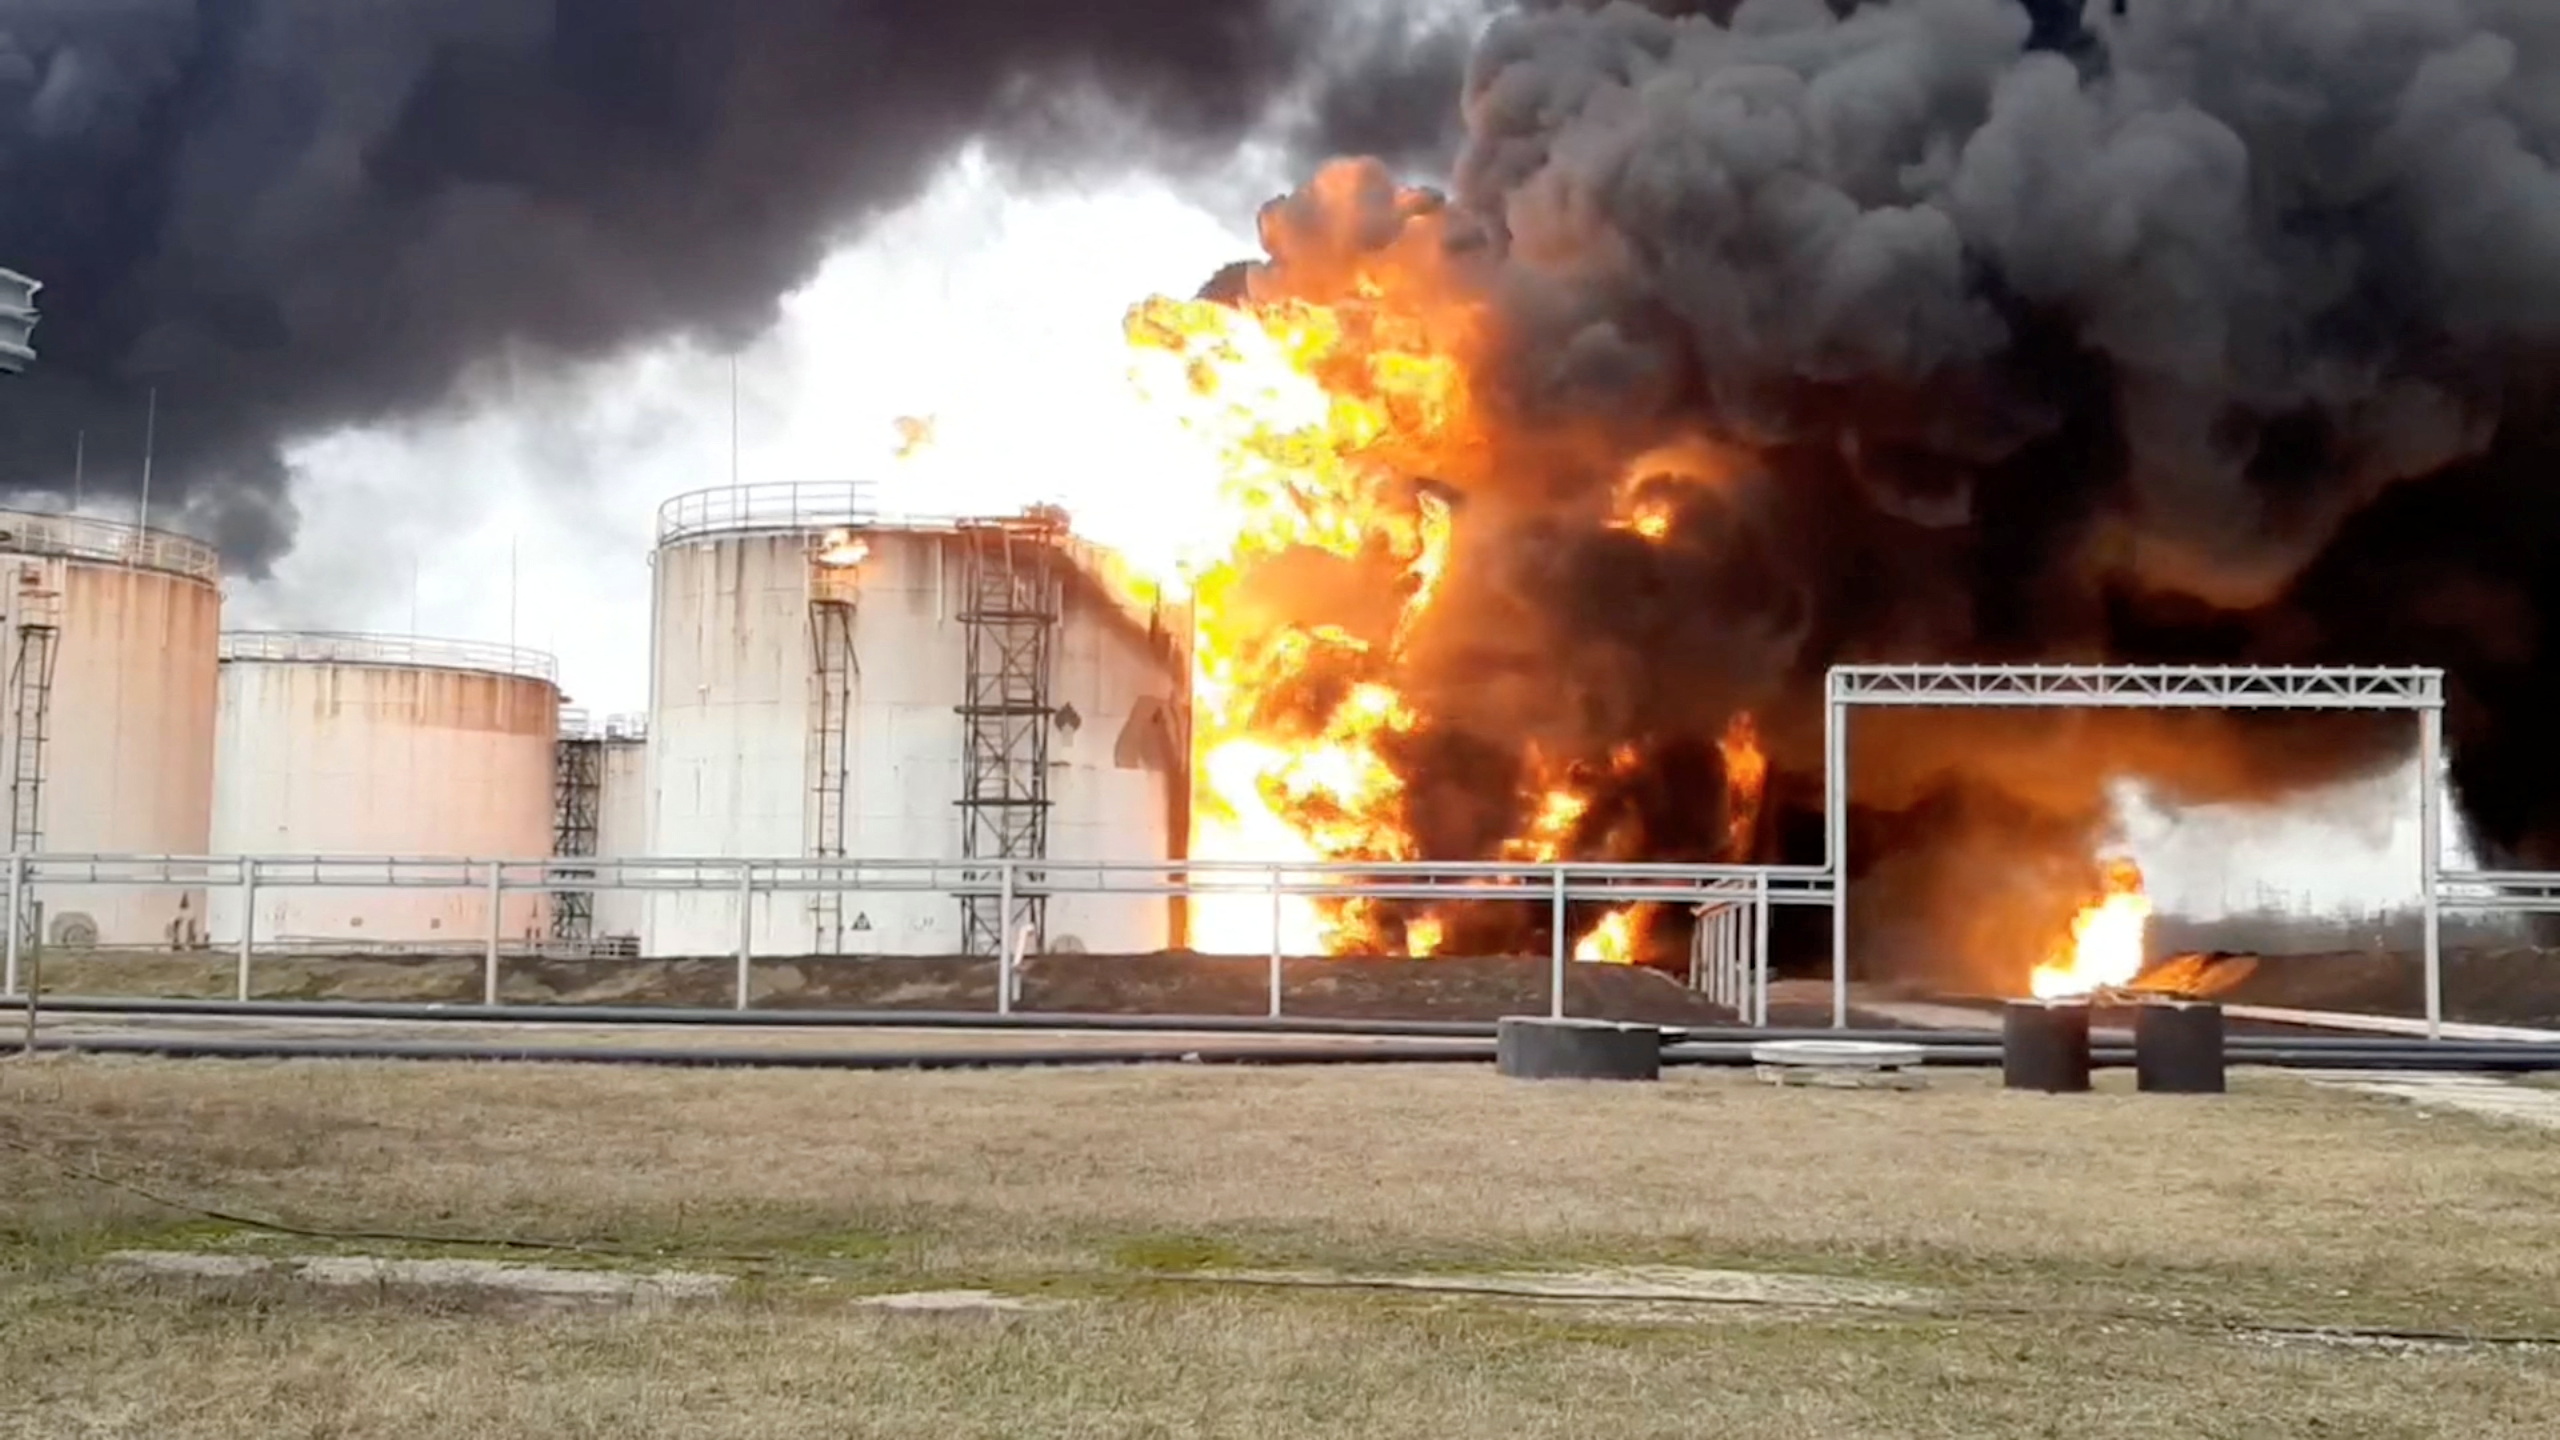 O imagine statică luată dintr-un clip video arată un incendiu la un depozit de combustibil din Belgorod, Rusia, pe 1 aprilie.